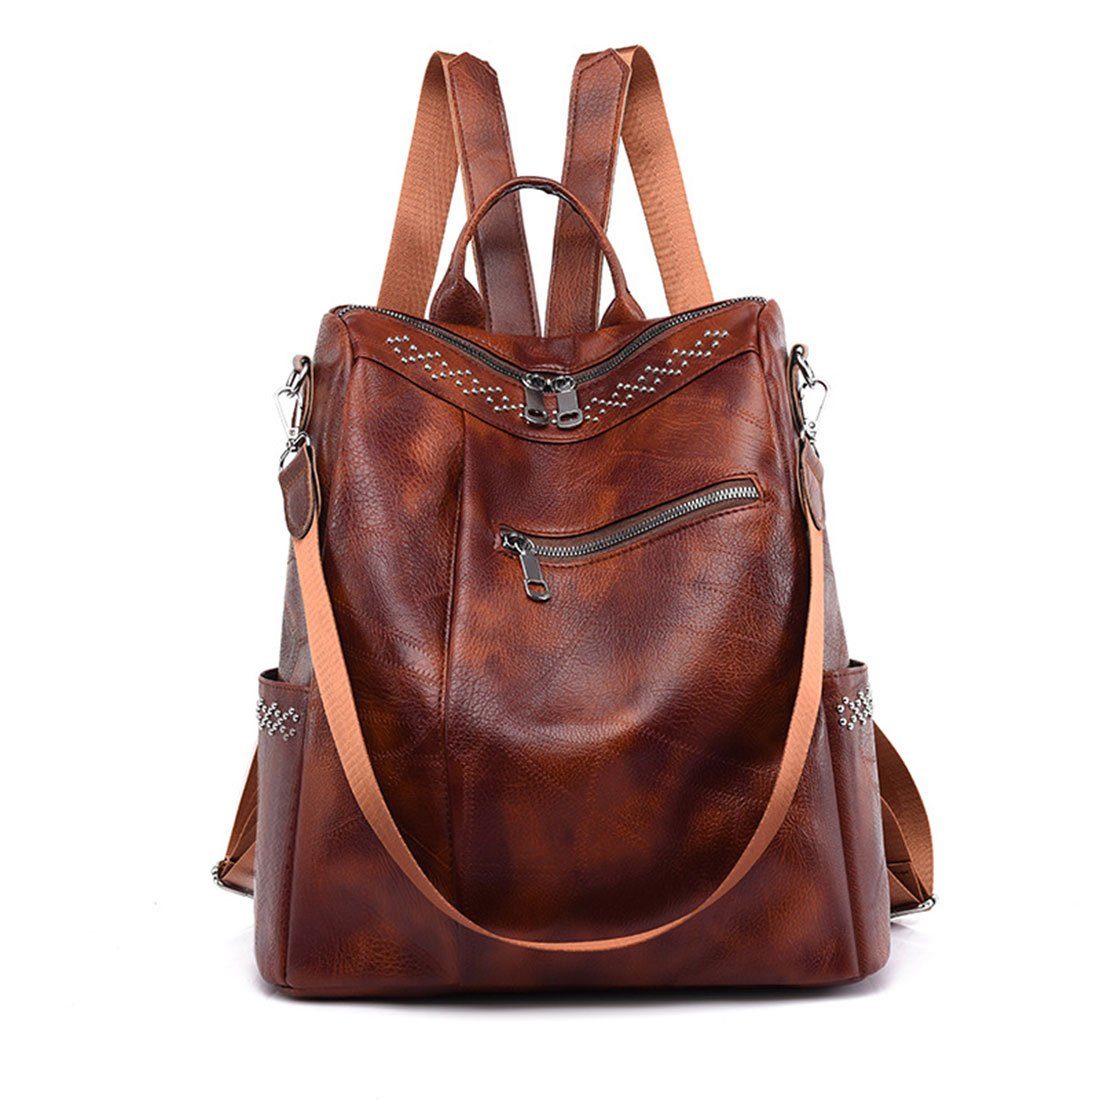 HNDSG Cityrucksack Damen Fashion Travel Shoulder Backpack,Soft Leather Schoolbag Backpack Braun